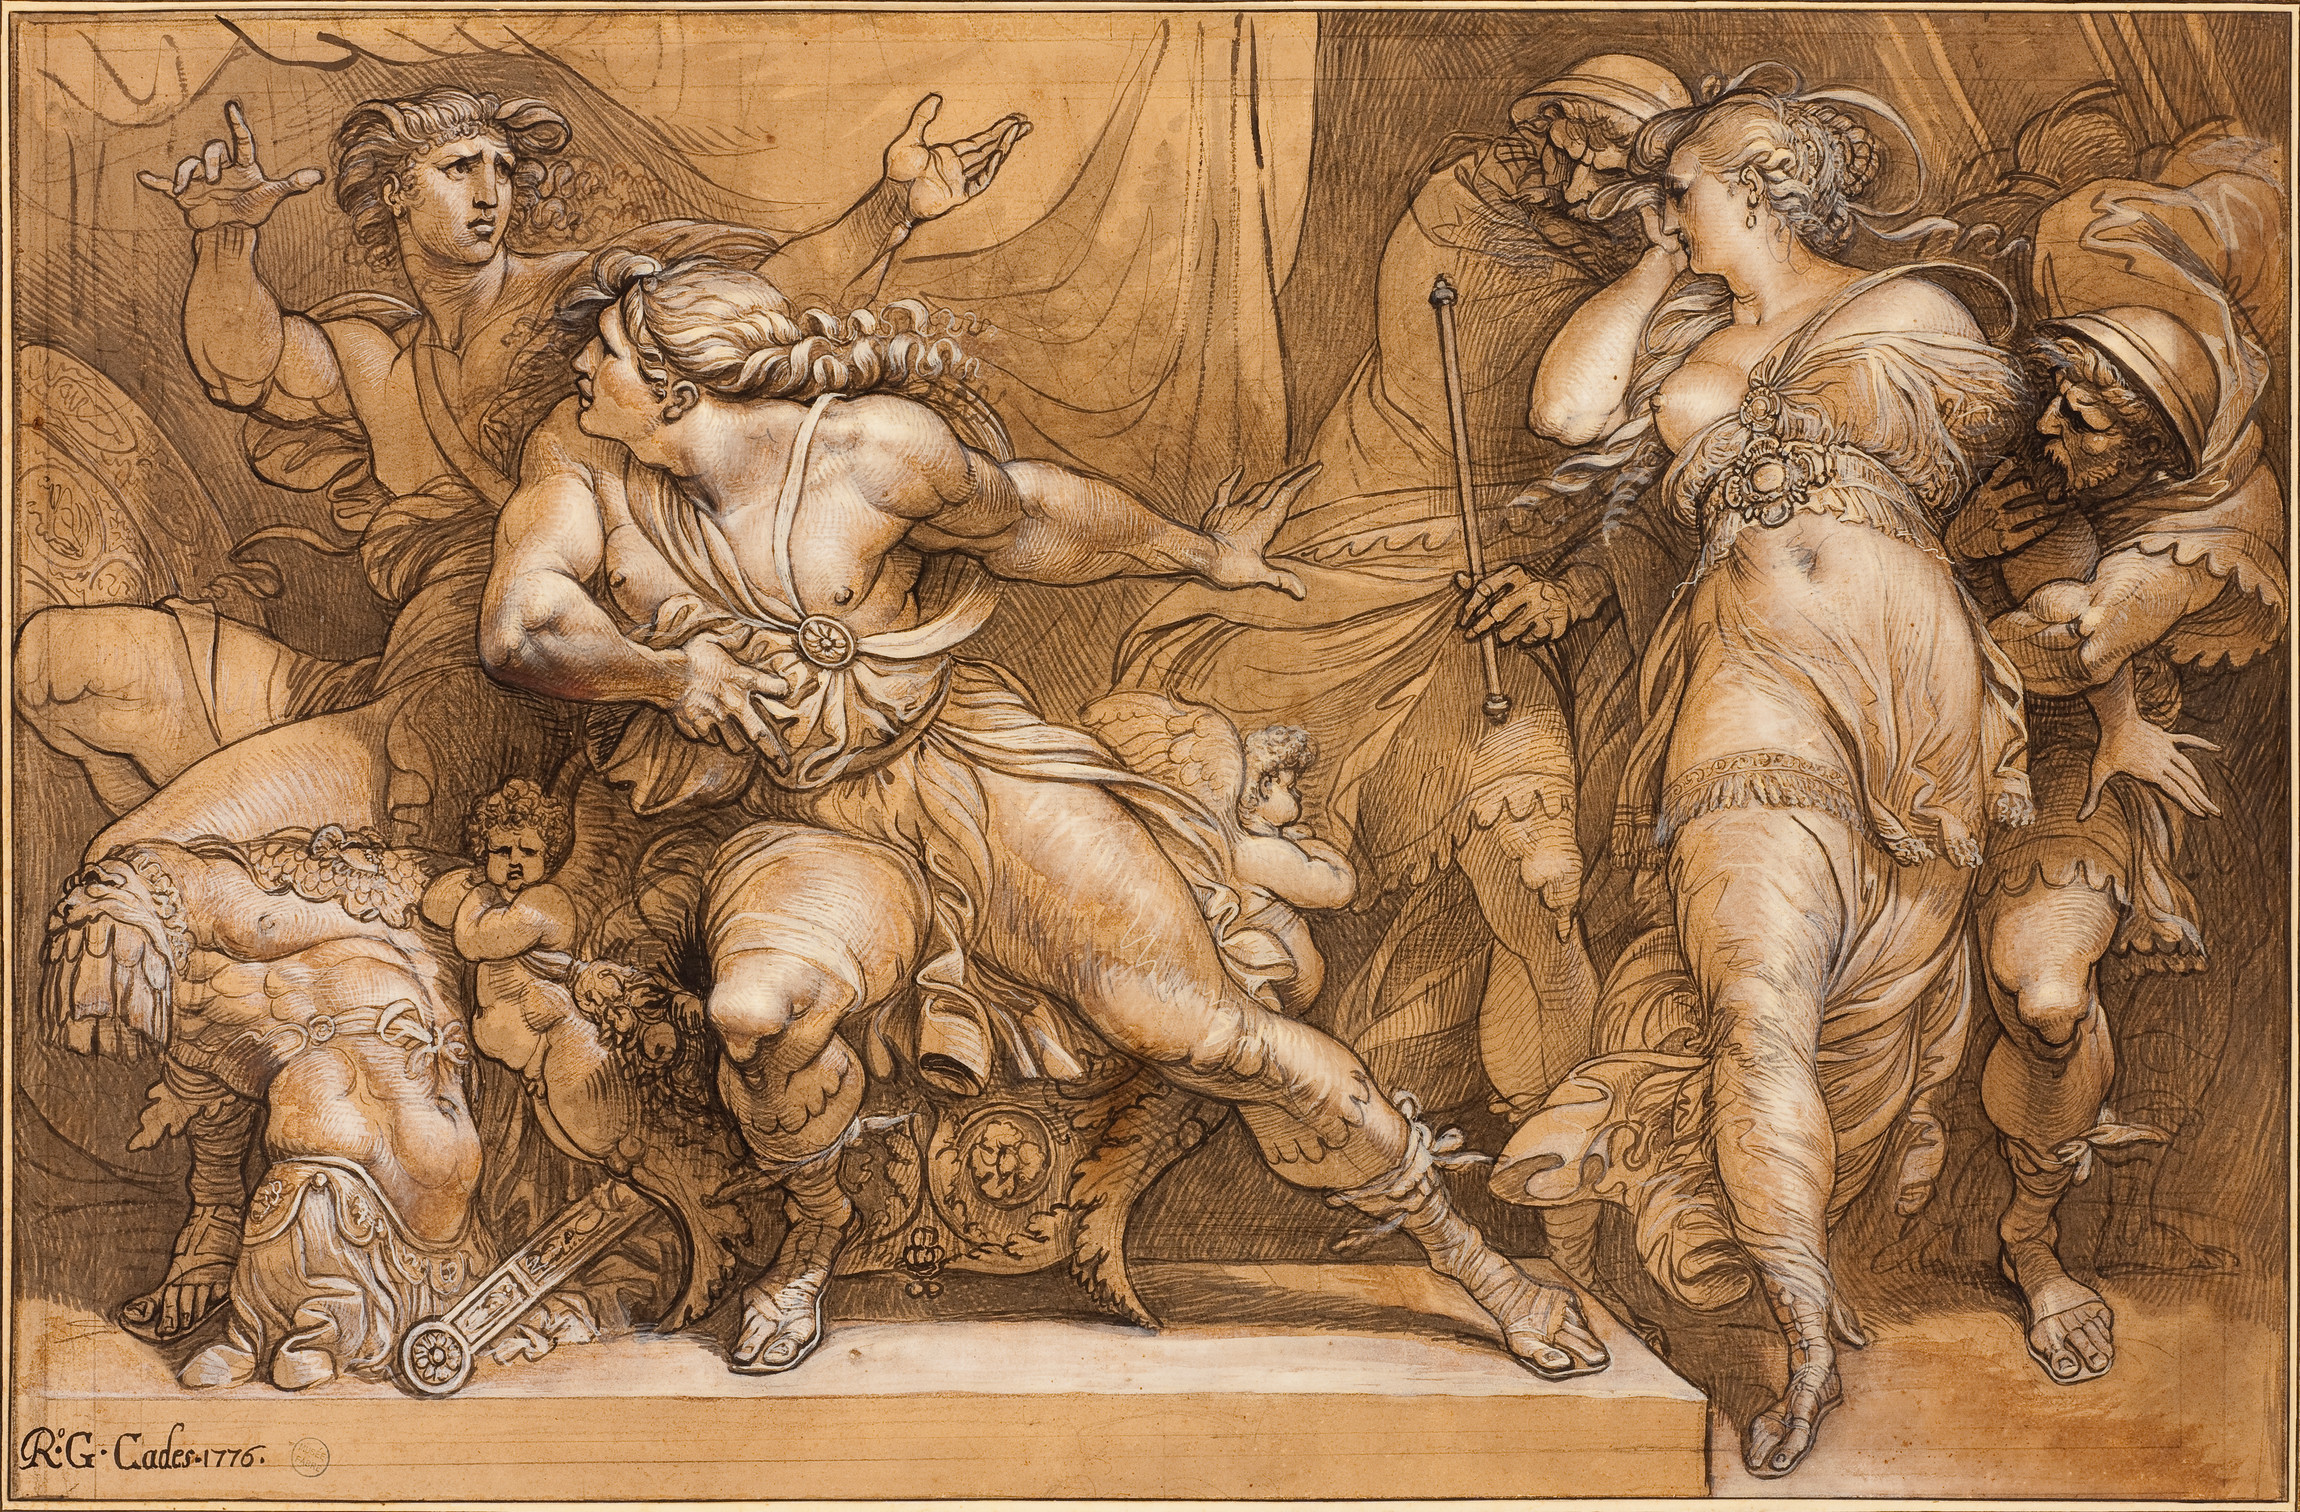 Les hérauts d'Agamemnon emmenant Briséis tandis qu'Achille se résout à son enlèvement et que Patrocle s'en lamente